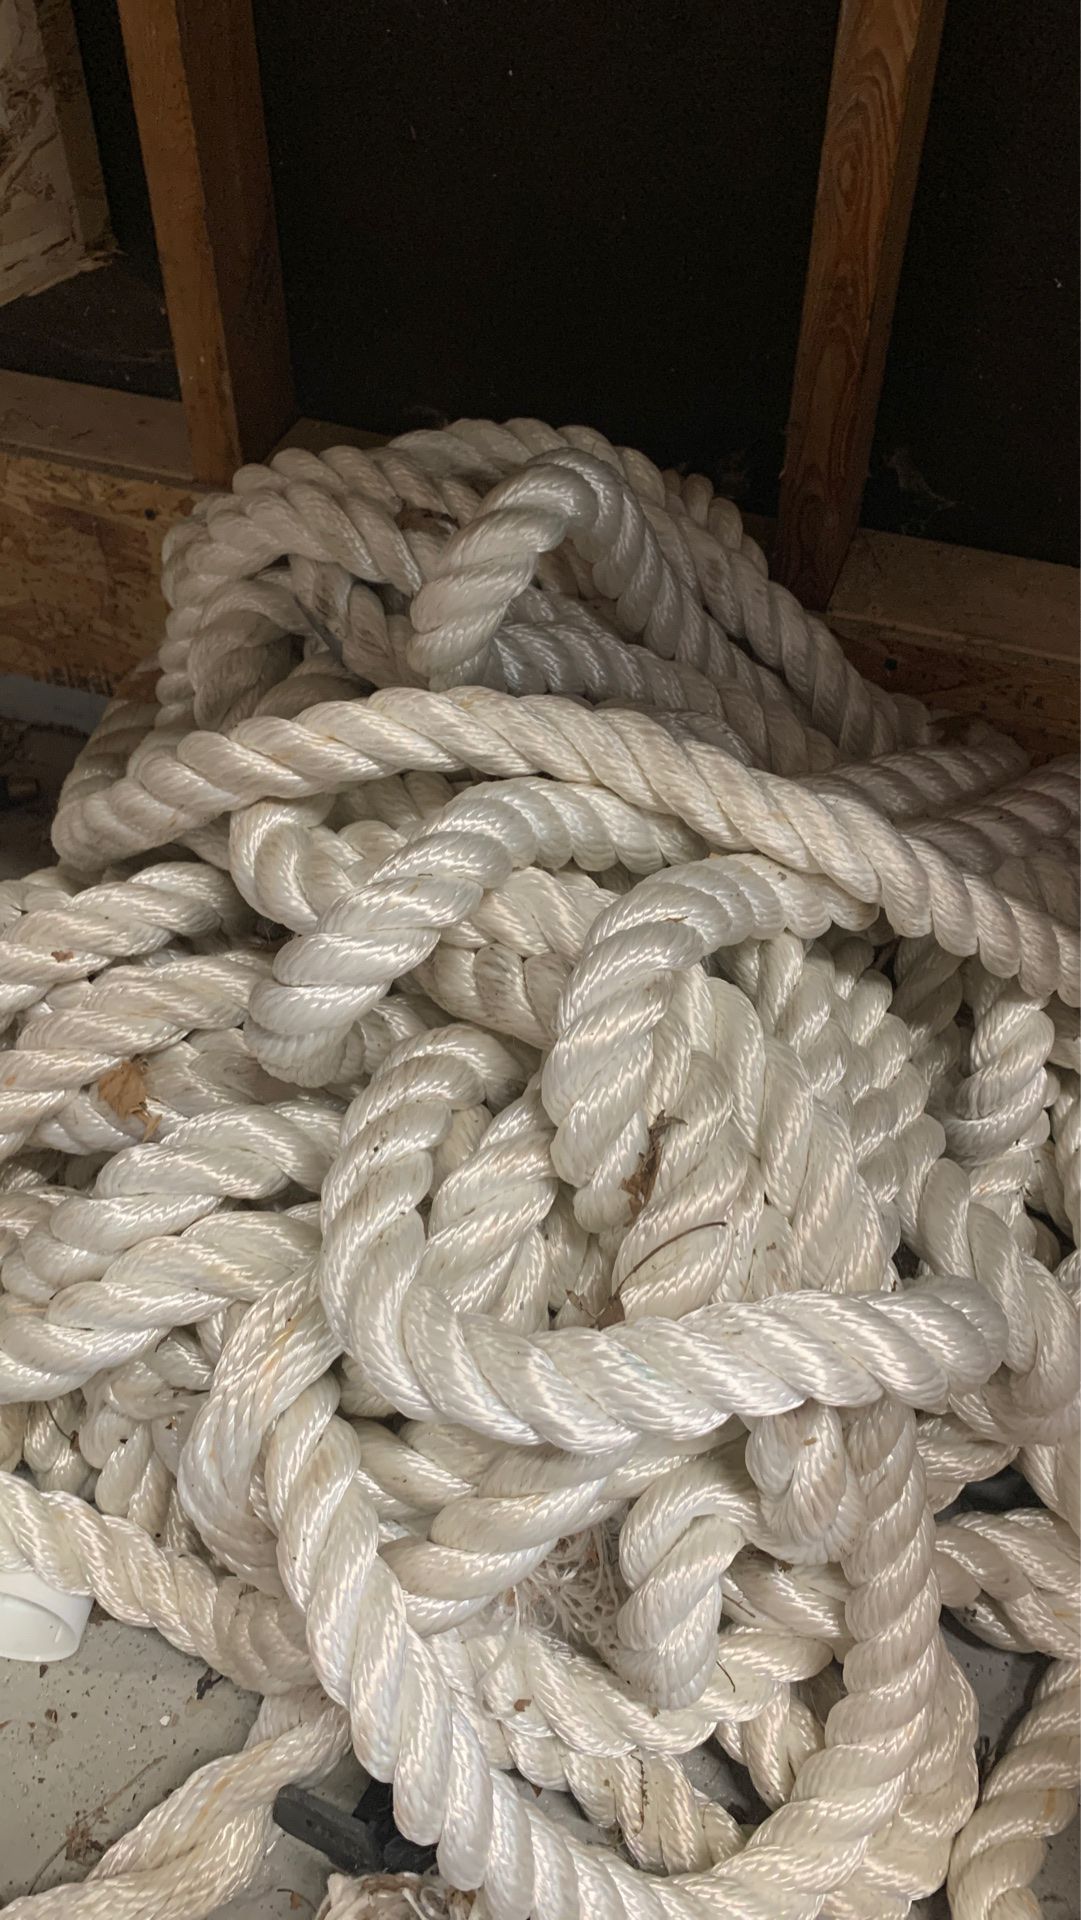 4” marine rope